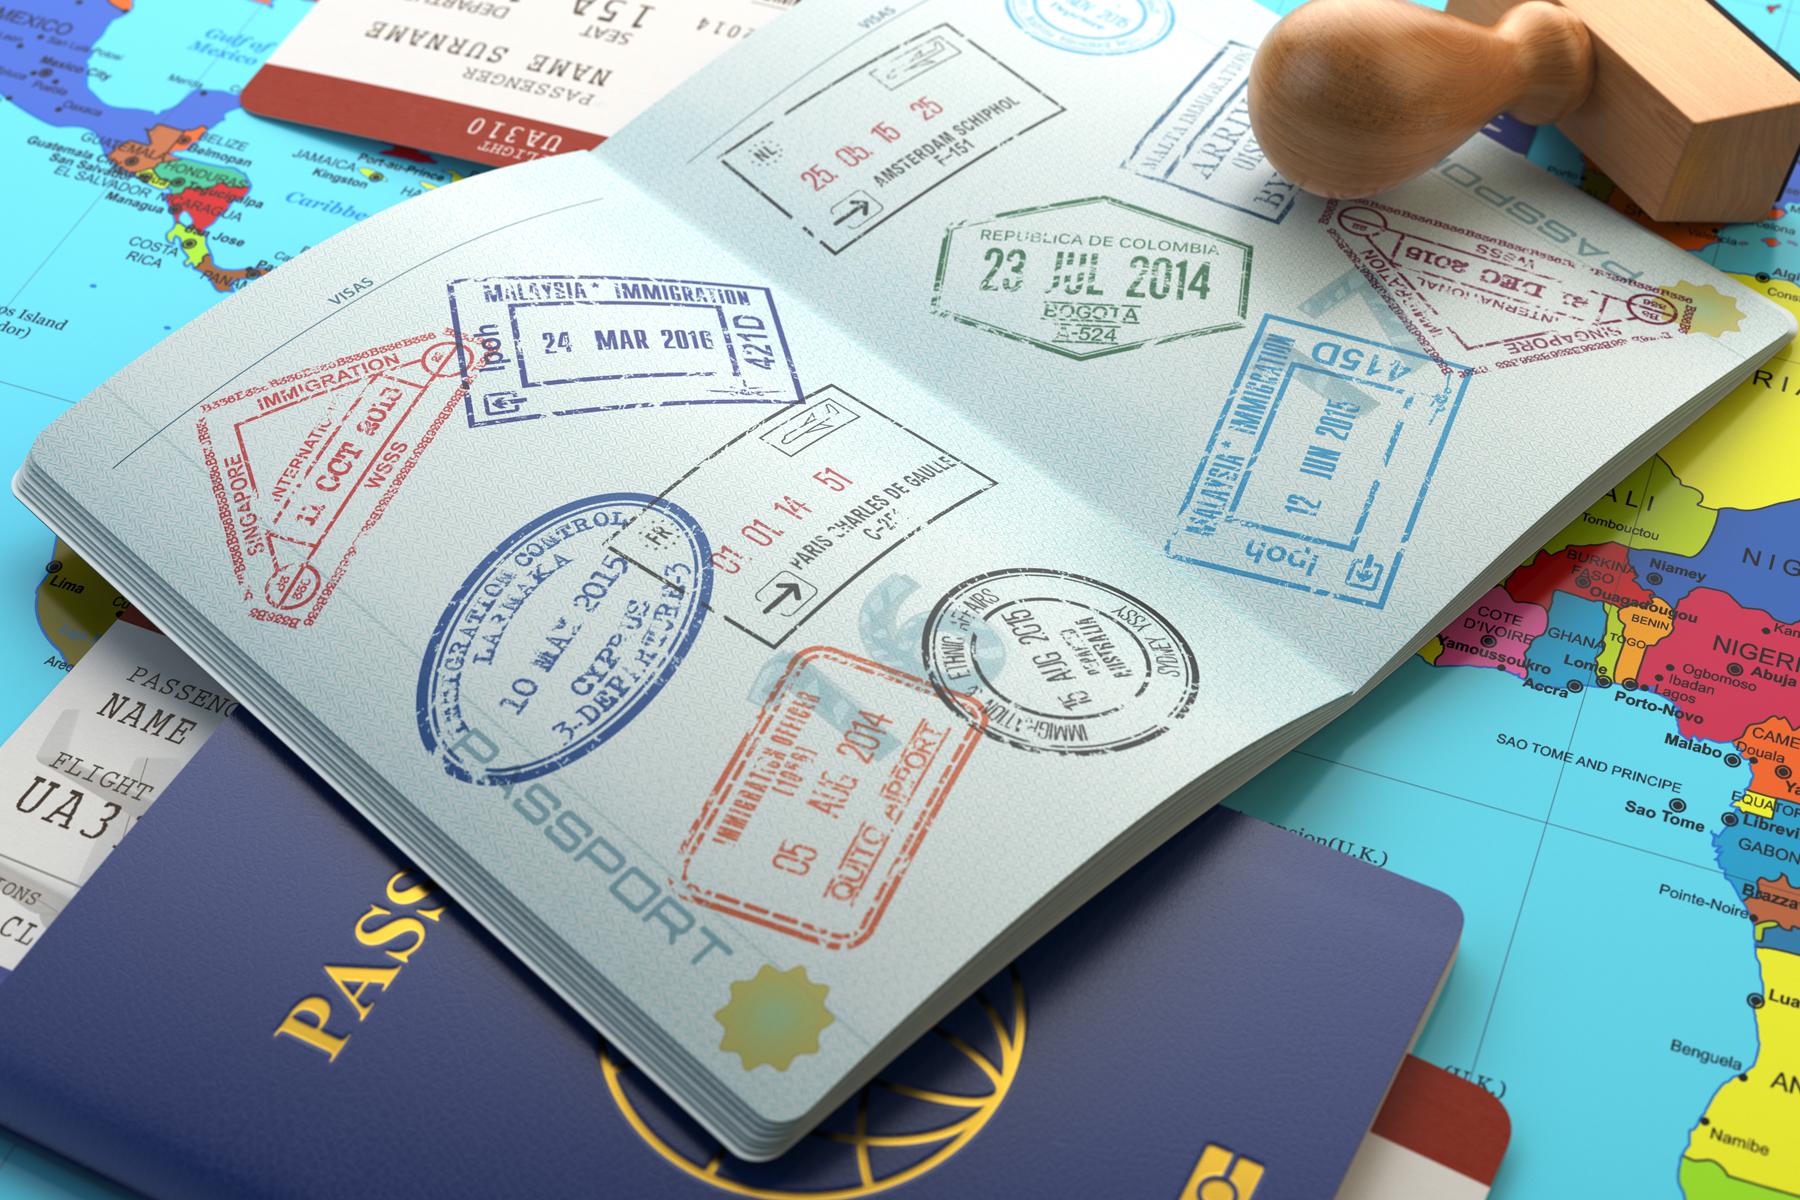 Dünyanın en güçlü pasaportları belli oldu